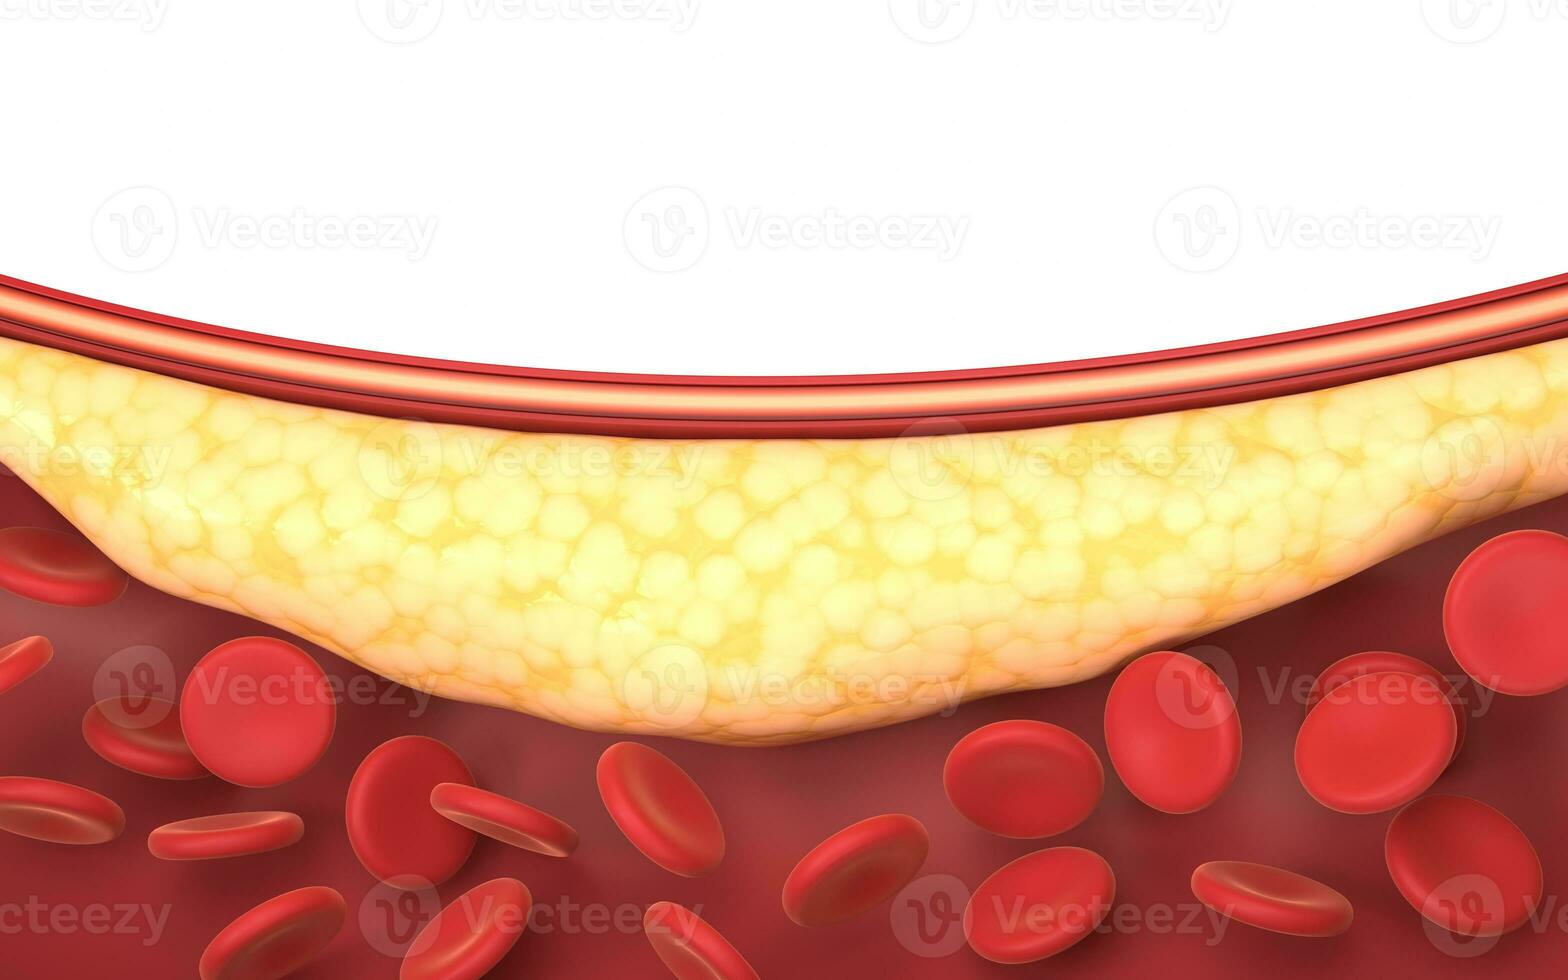 fett och röd blod celler i blod kärl, 3d tolkning. foto